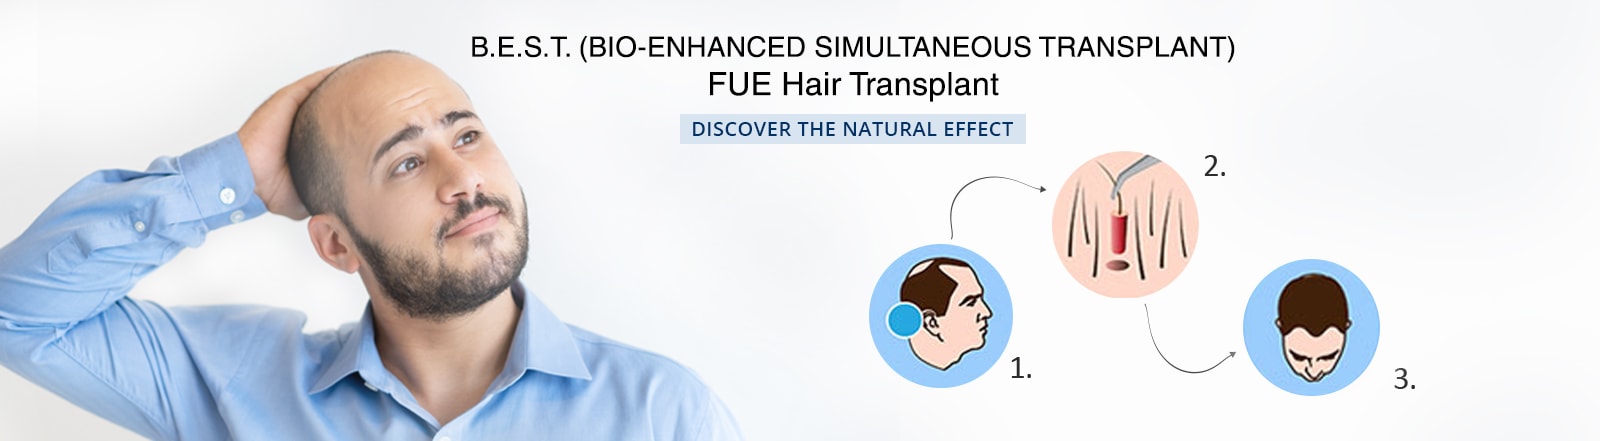 bio enhanced simultaneous transplant